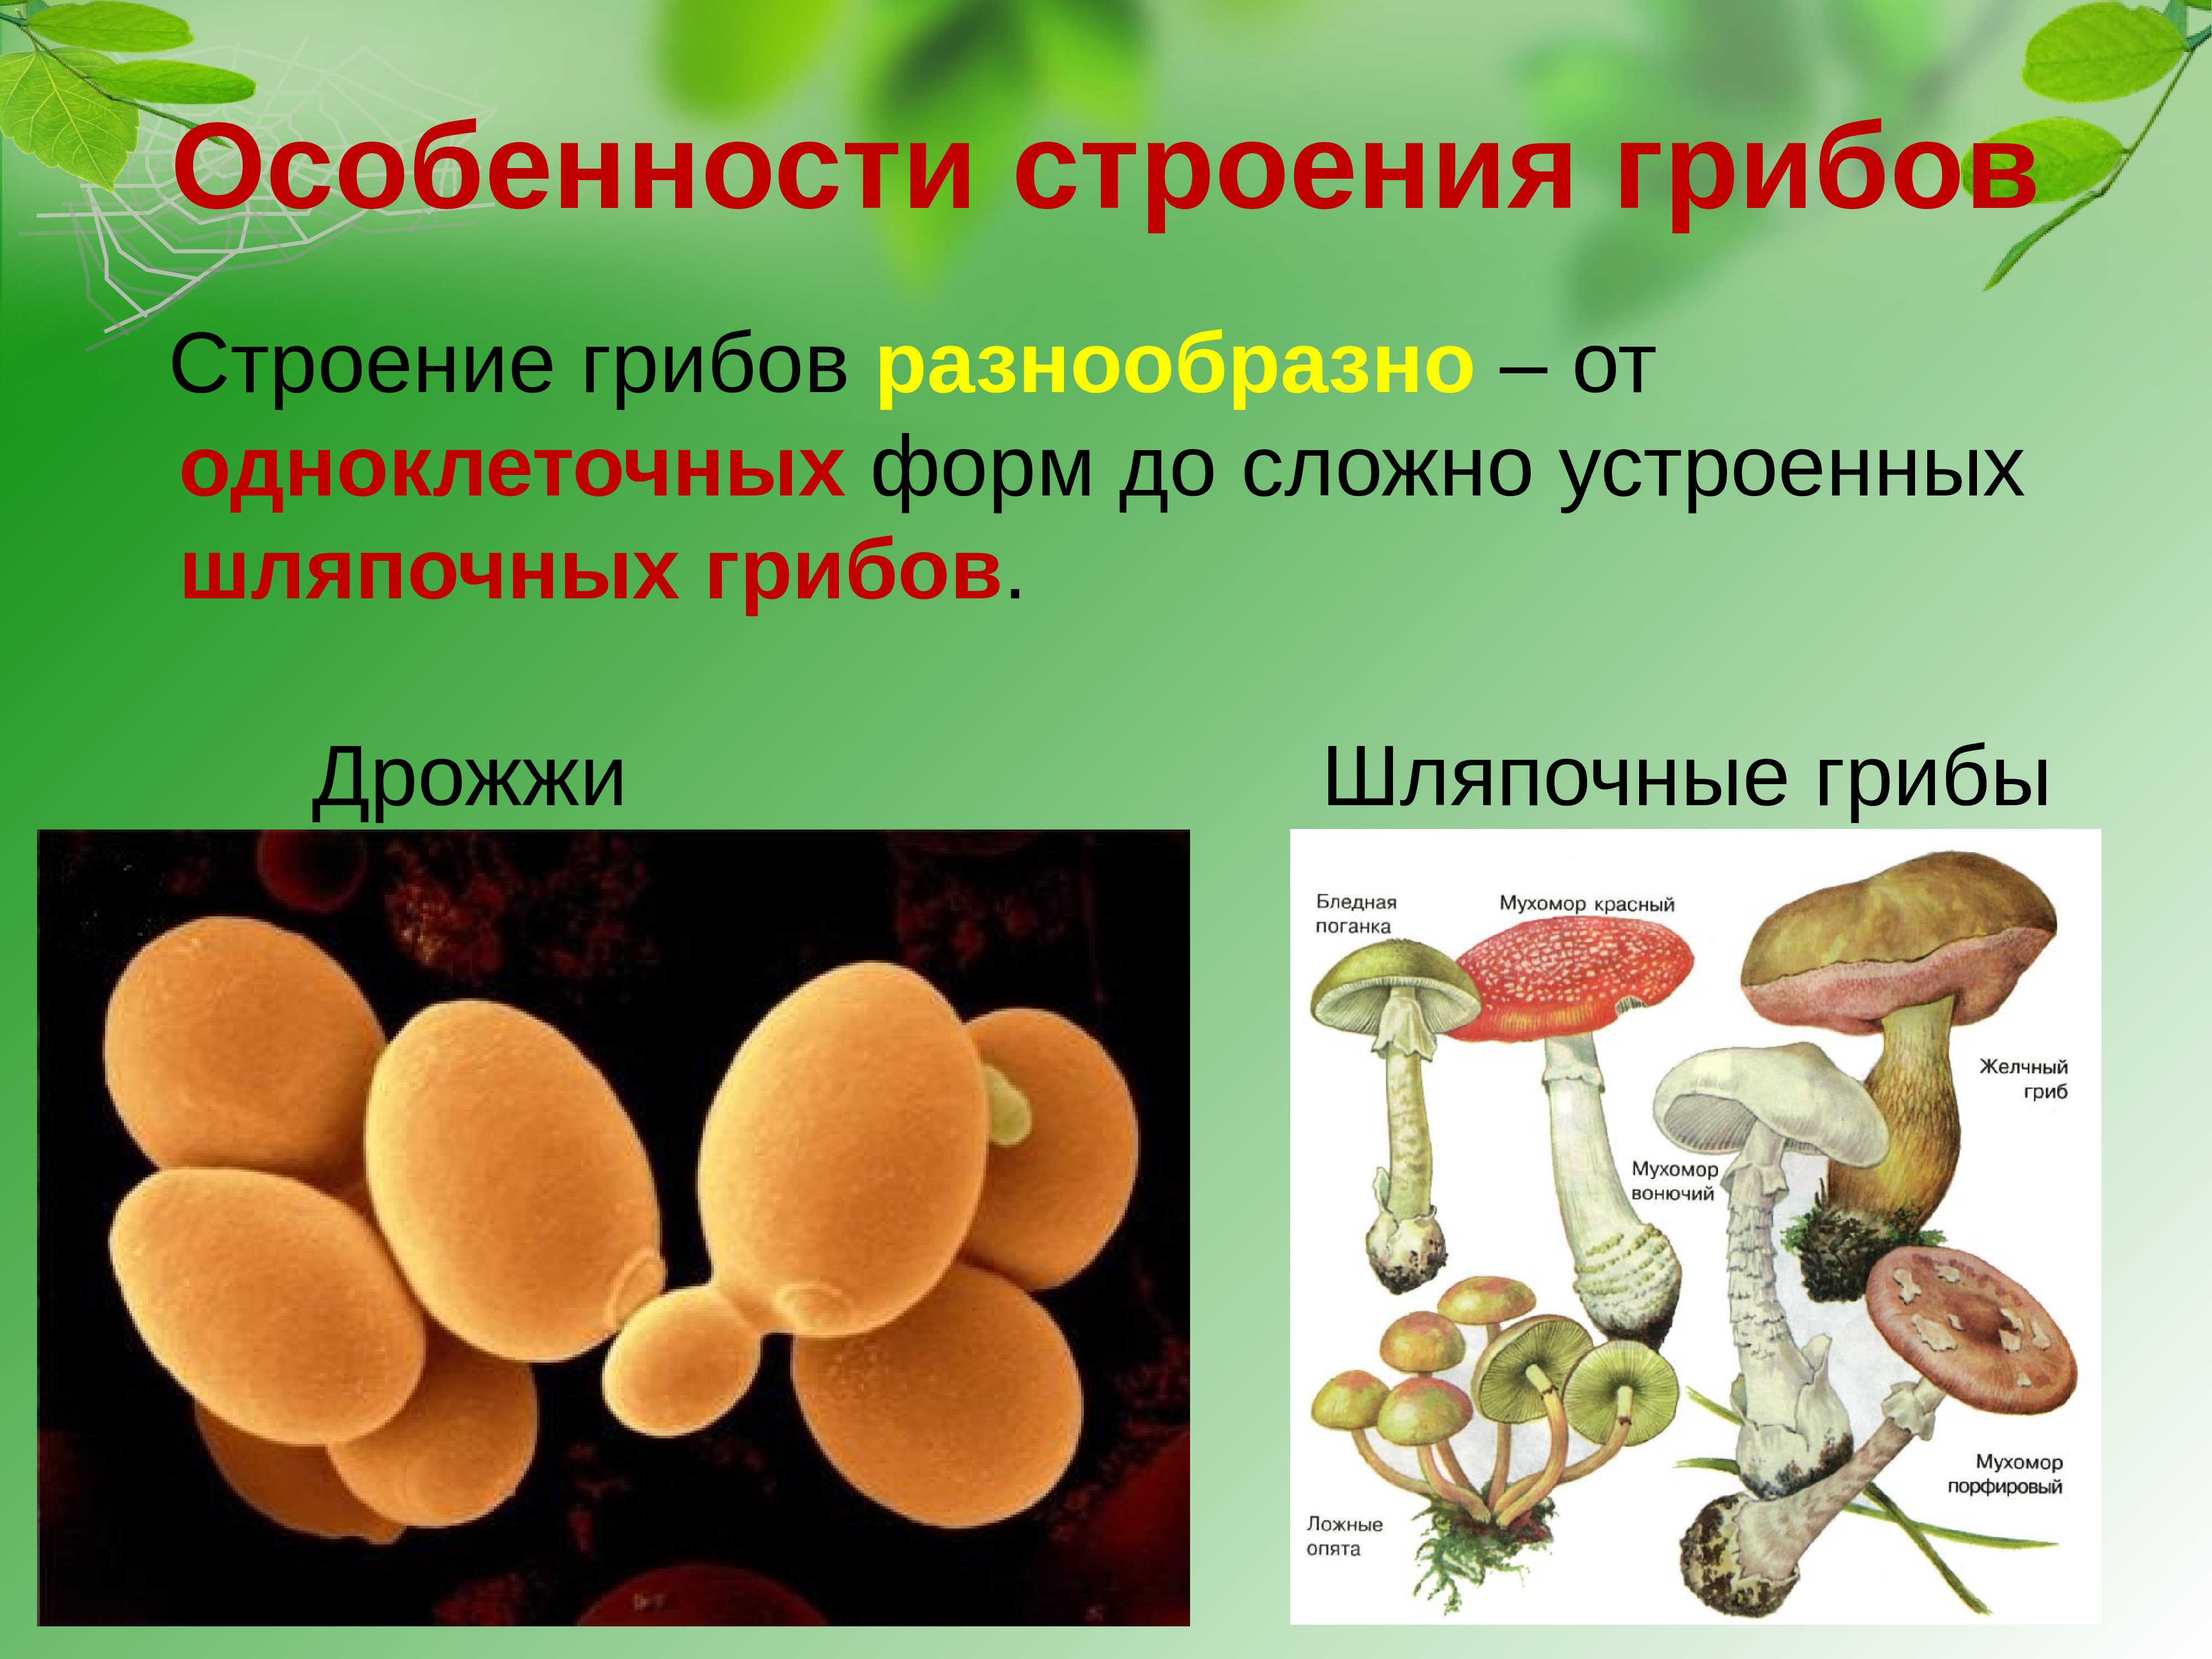 Клетки шляпочных грибов. Строение одноклеточных грибов дрожжи. Строение грибов грибов. Грибы строение шляпочных грибов. Царство грибов одноклеточные (дрожжи).